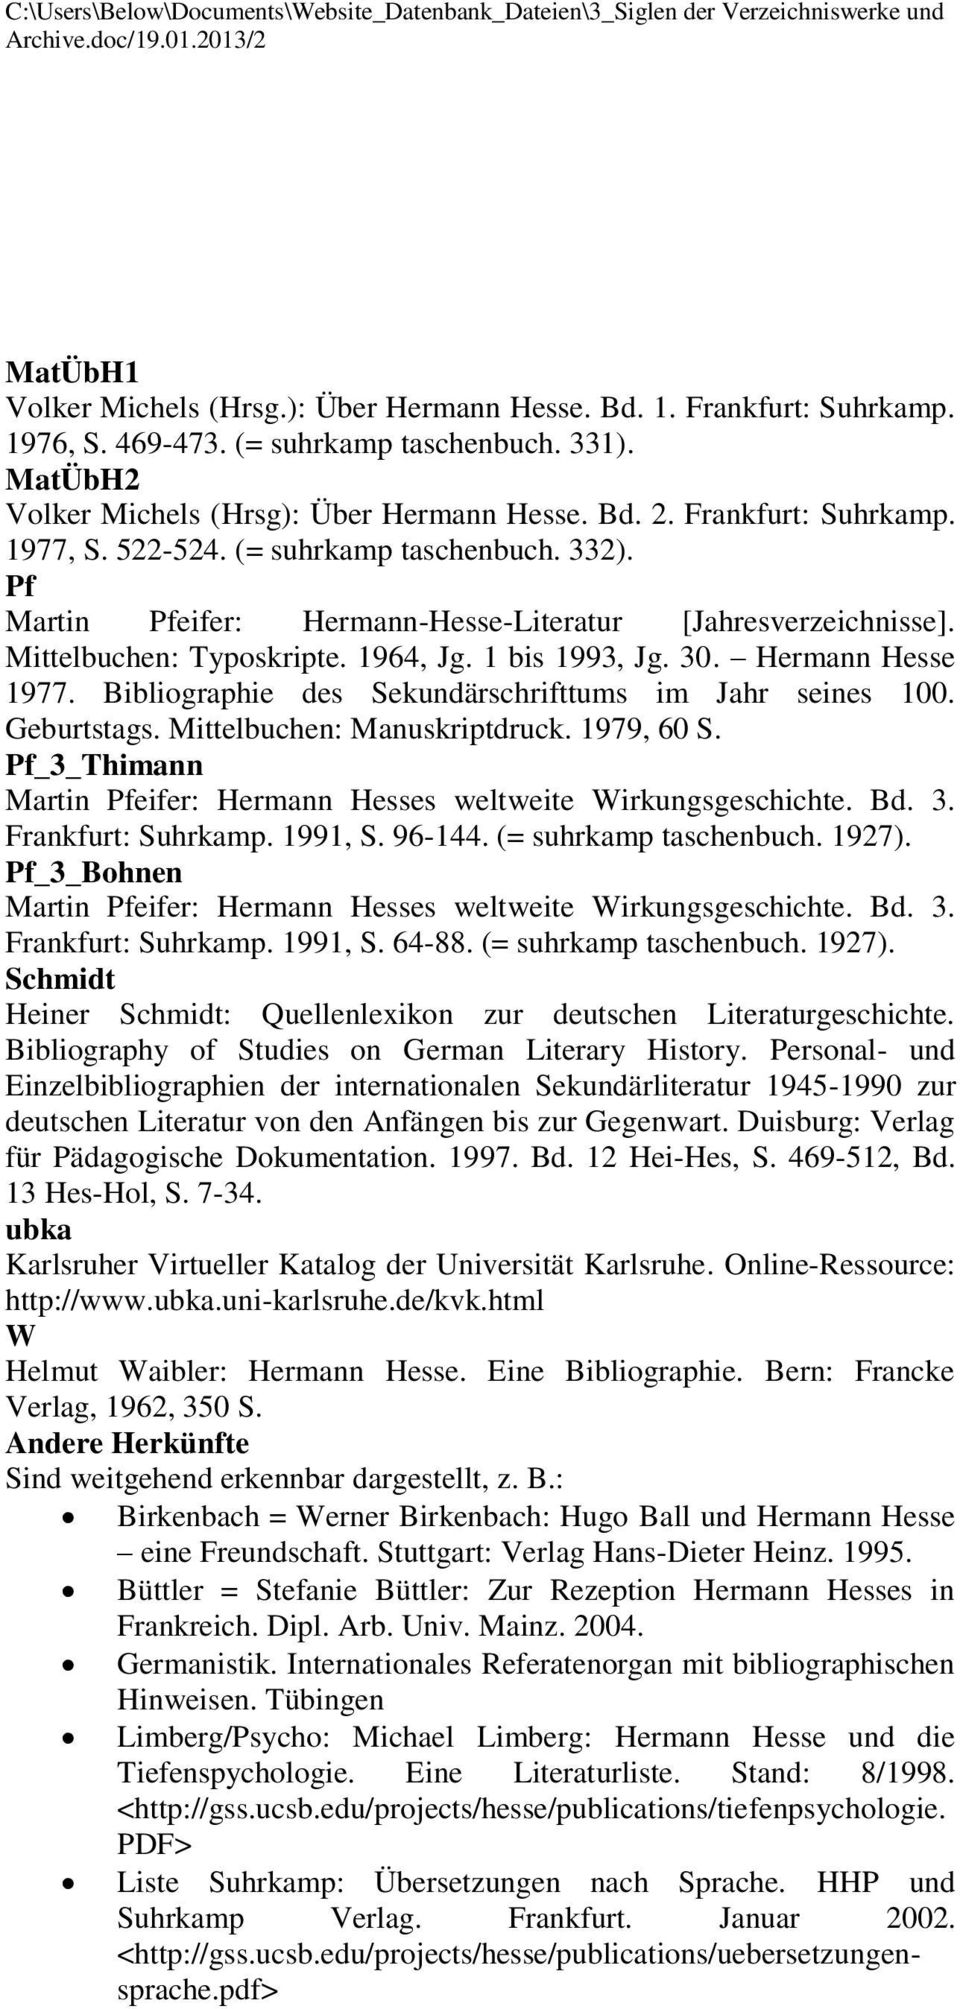 Mittelbuchen: Typoskripte. 1964, Jg. 1 bis 1993, Jg. 30. Hermann Hesse 1977. Bibliographie des Sekundärschrifttums im Jahr seines 100. Geburtstags. Mittelbuchen: Manuskriptdruck. 1979, 60 S.